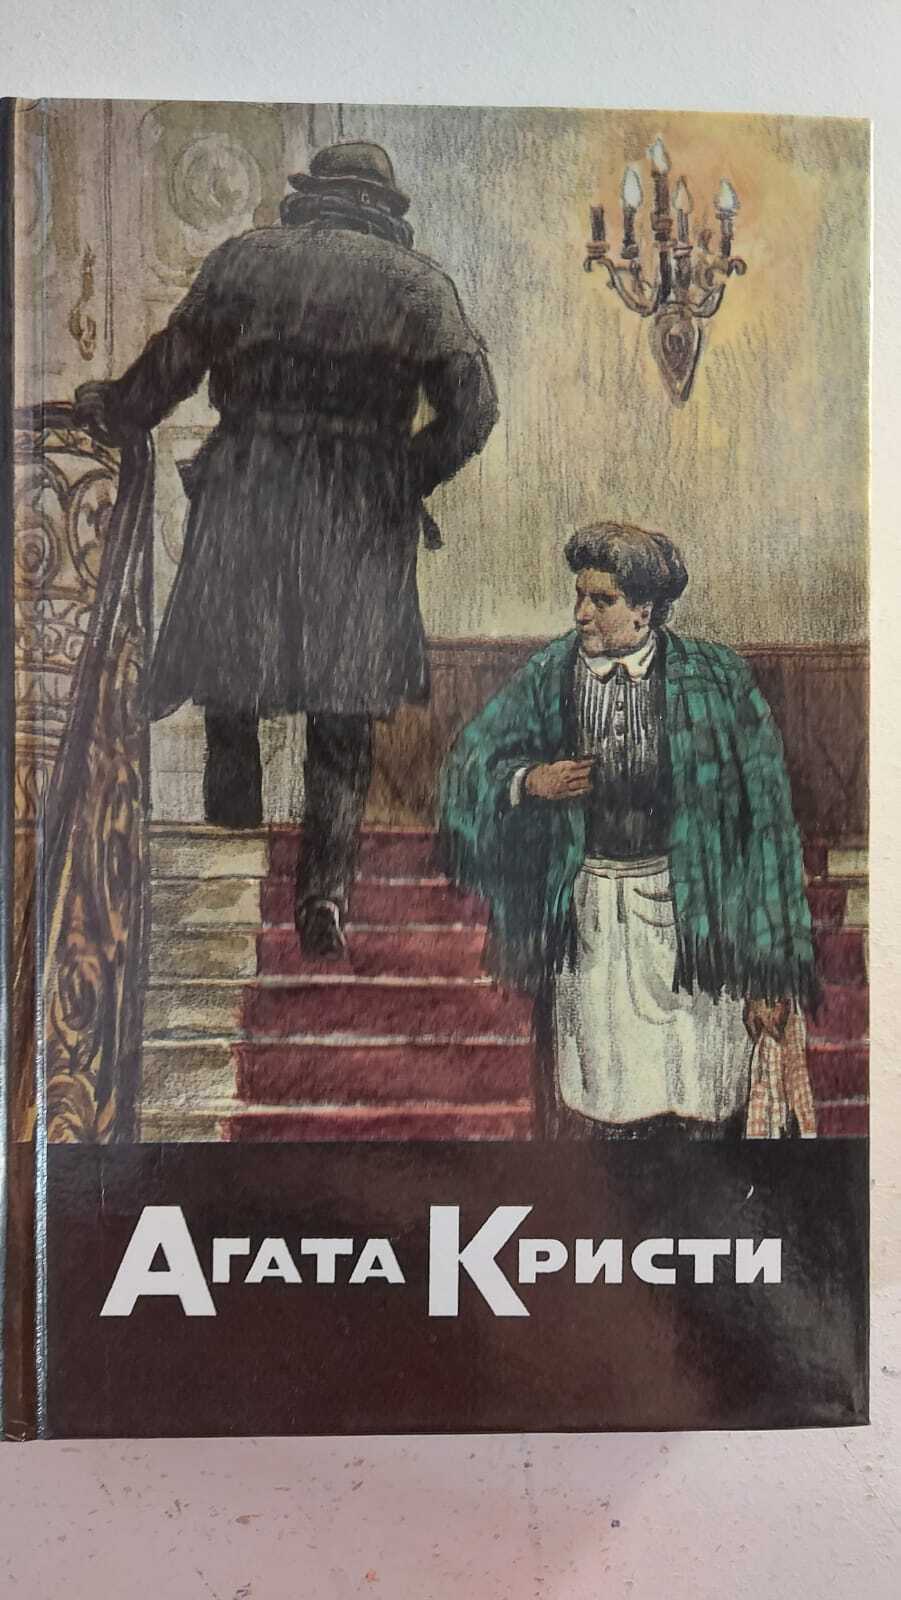 Агата кристи: биография писательницы и непревзойденной королевы детективов